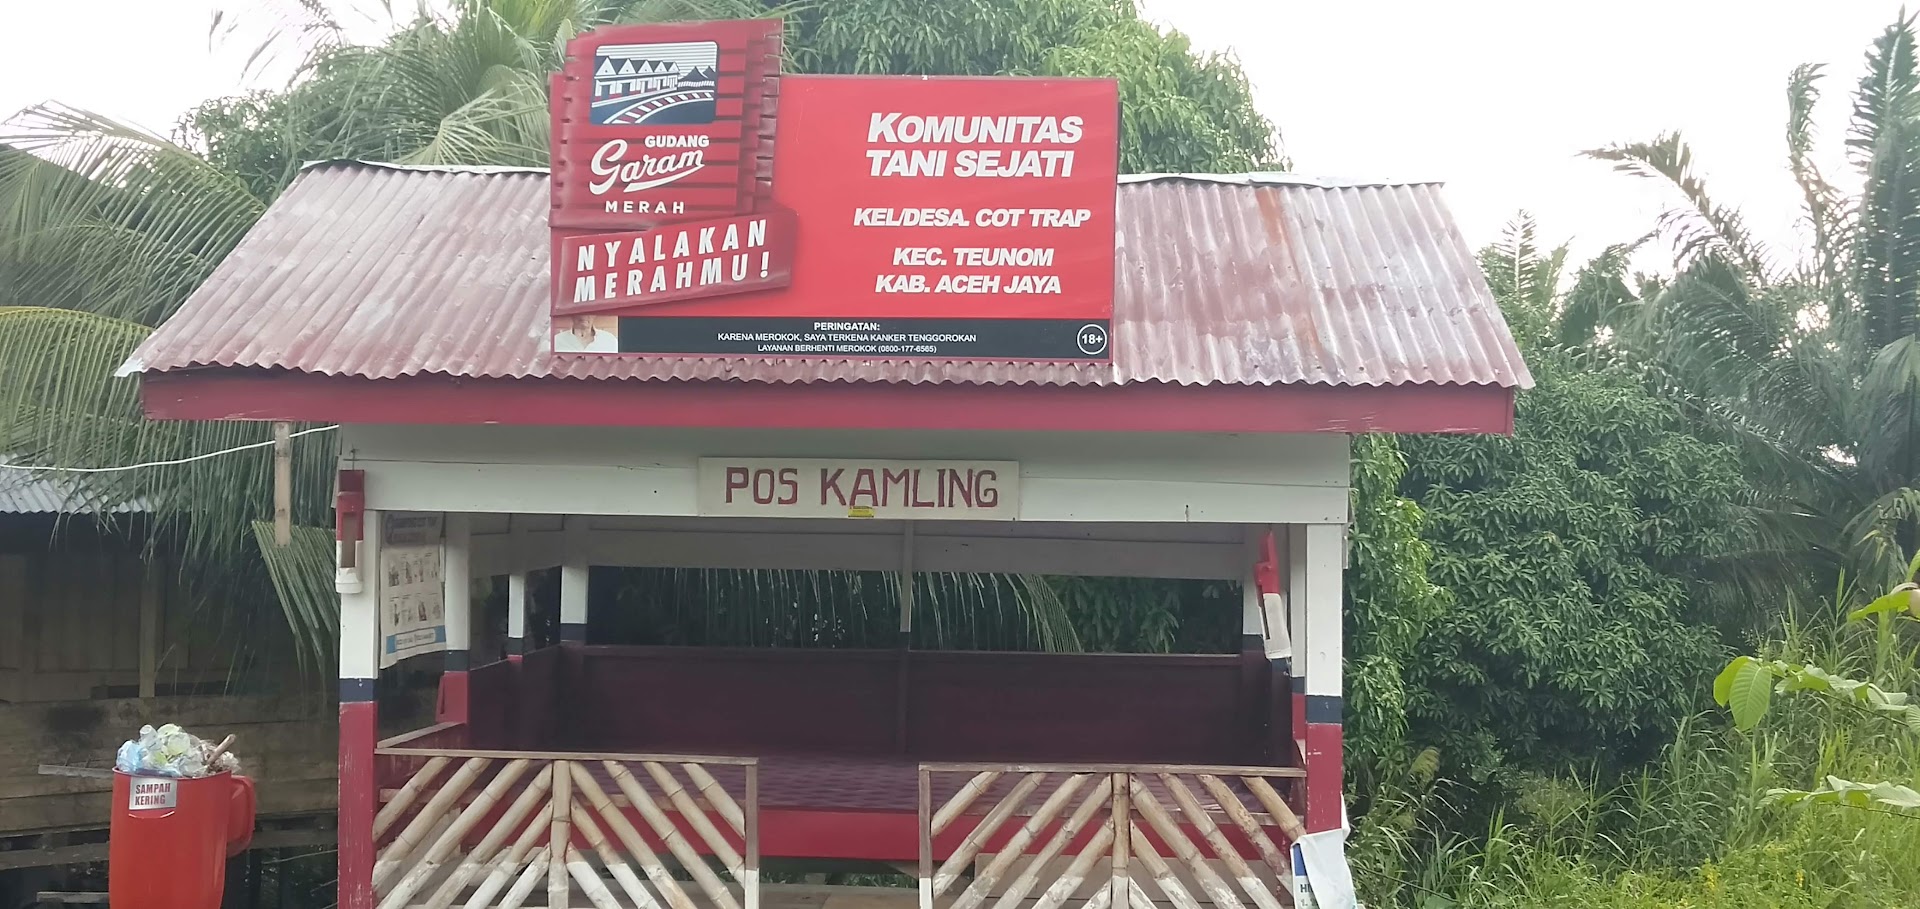 Gambar Pos Kamling Gampong Cot Trap